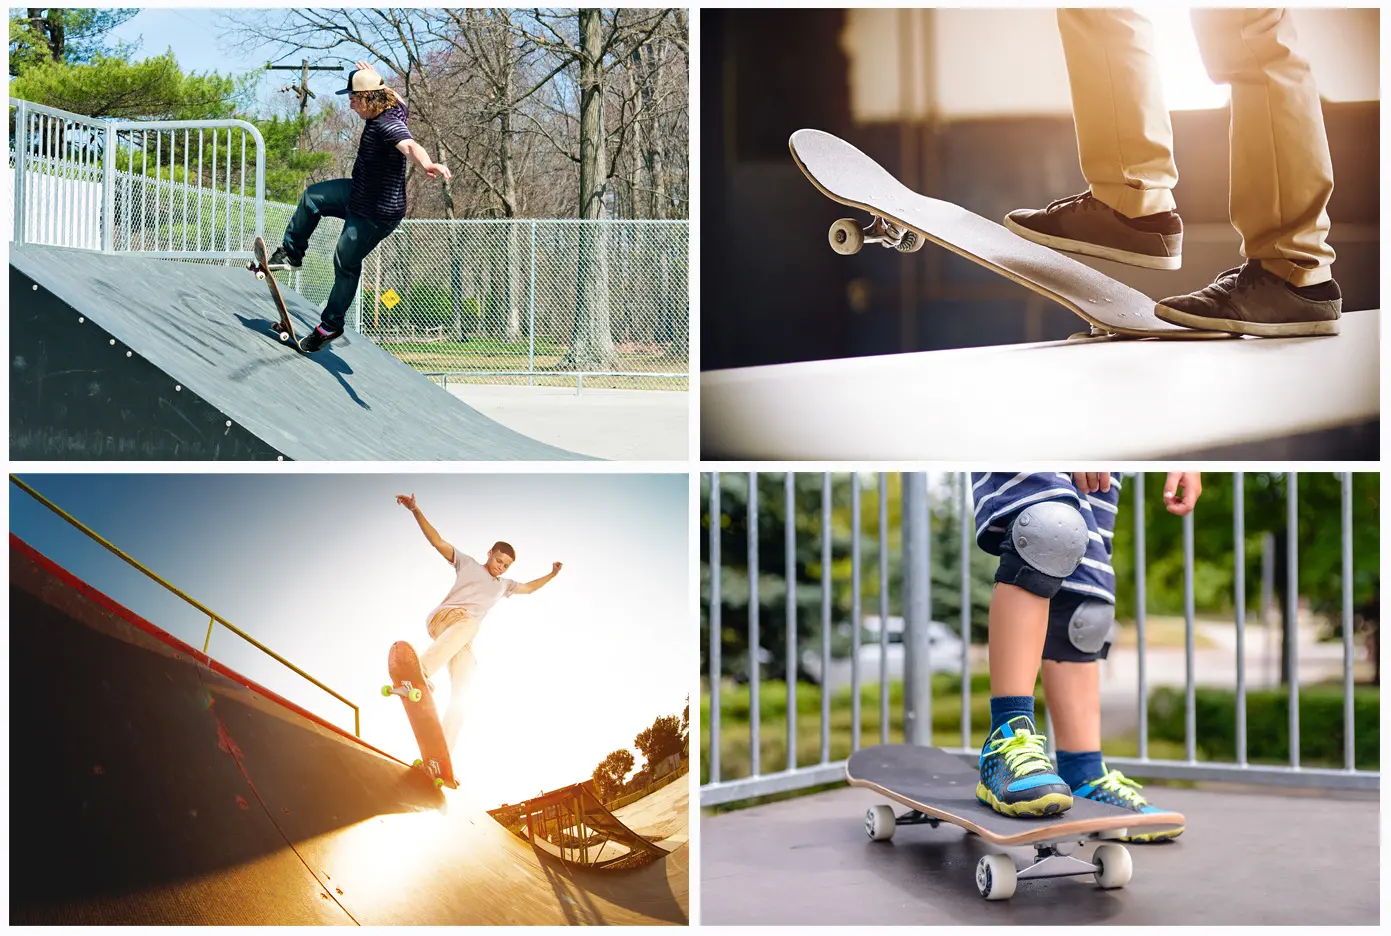 ungdomar som åker skateboard